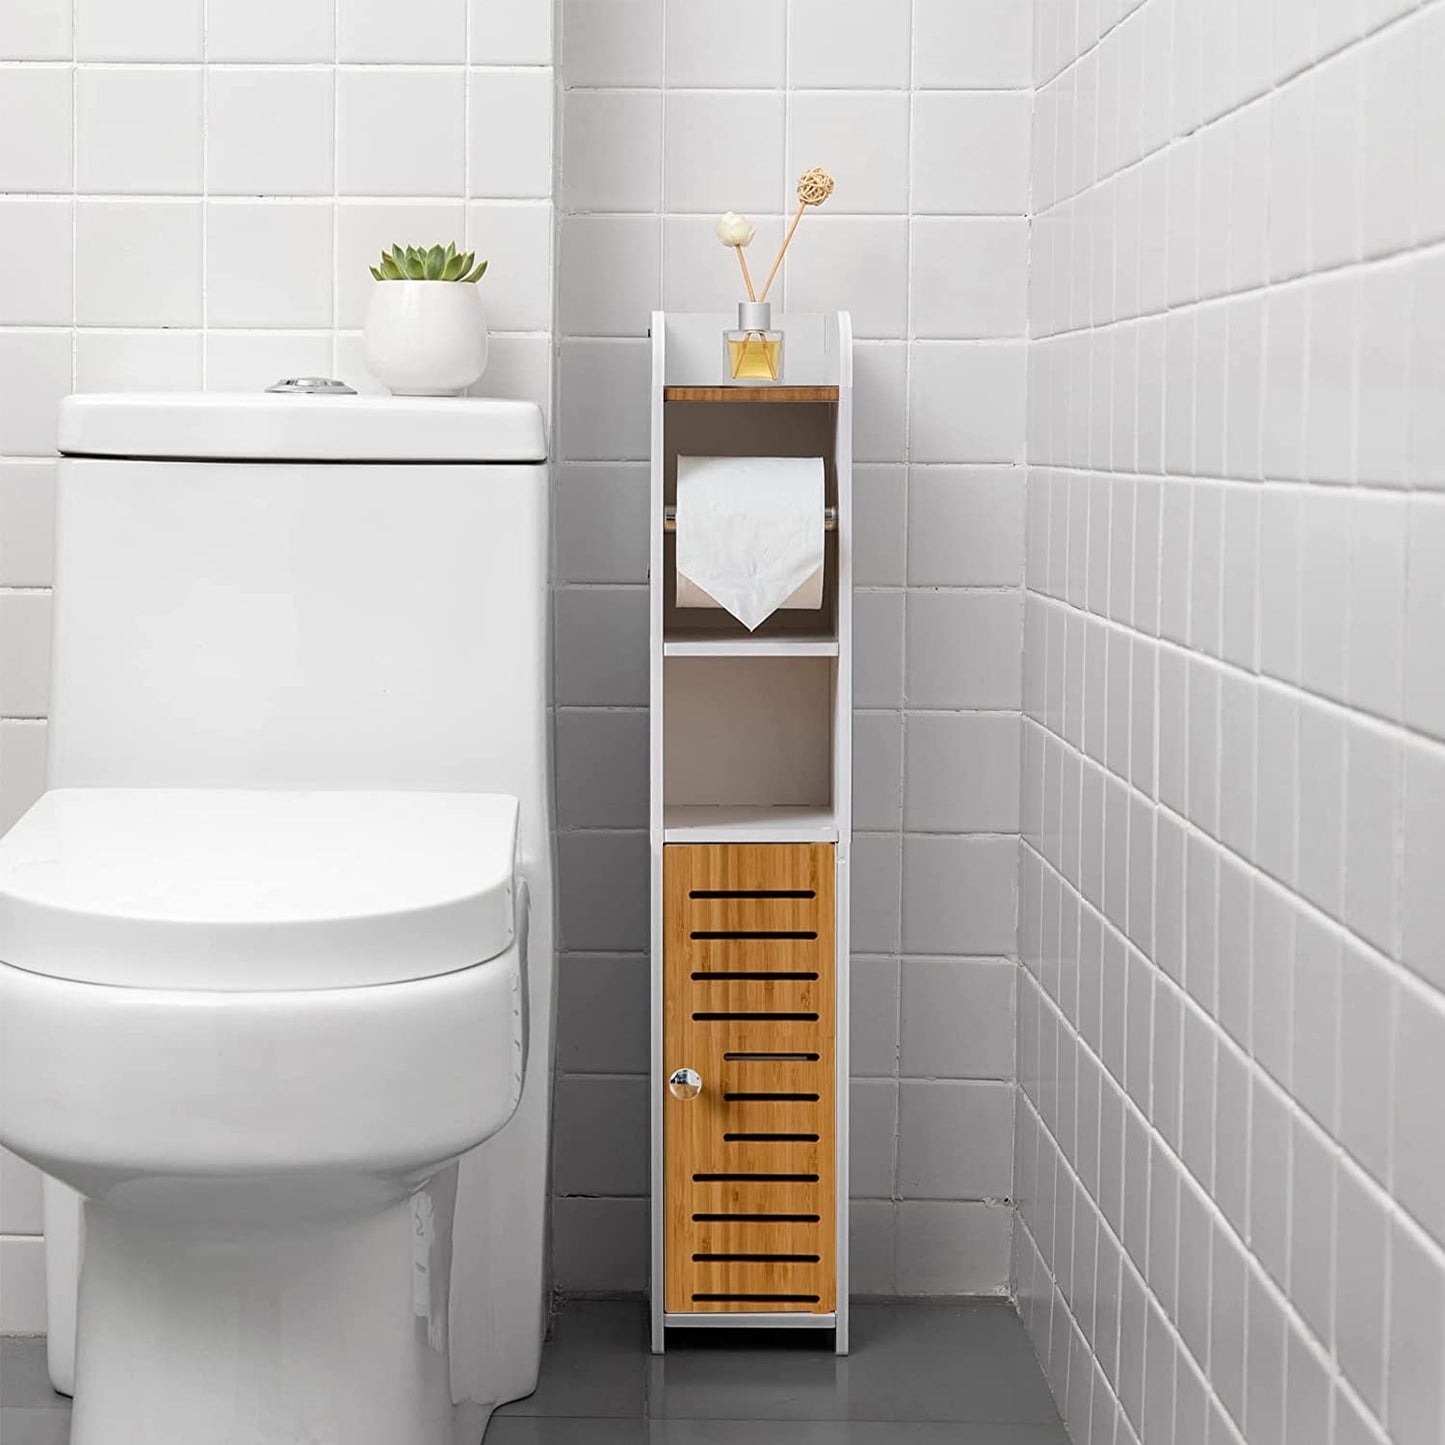 Toilet Paper Roll Holder for Bathroom with roller (Bamboo, 76cm) - BM House & Garden